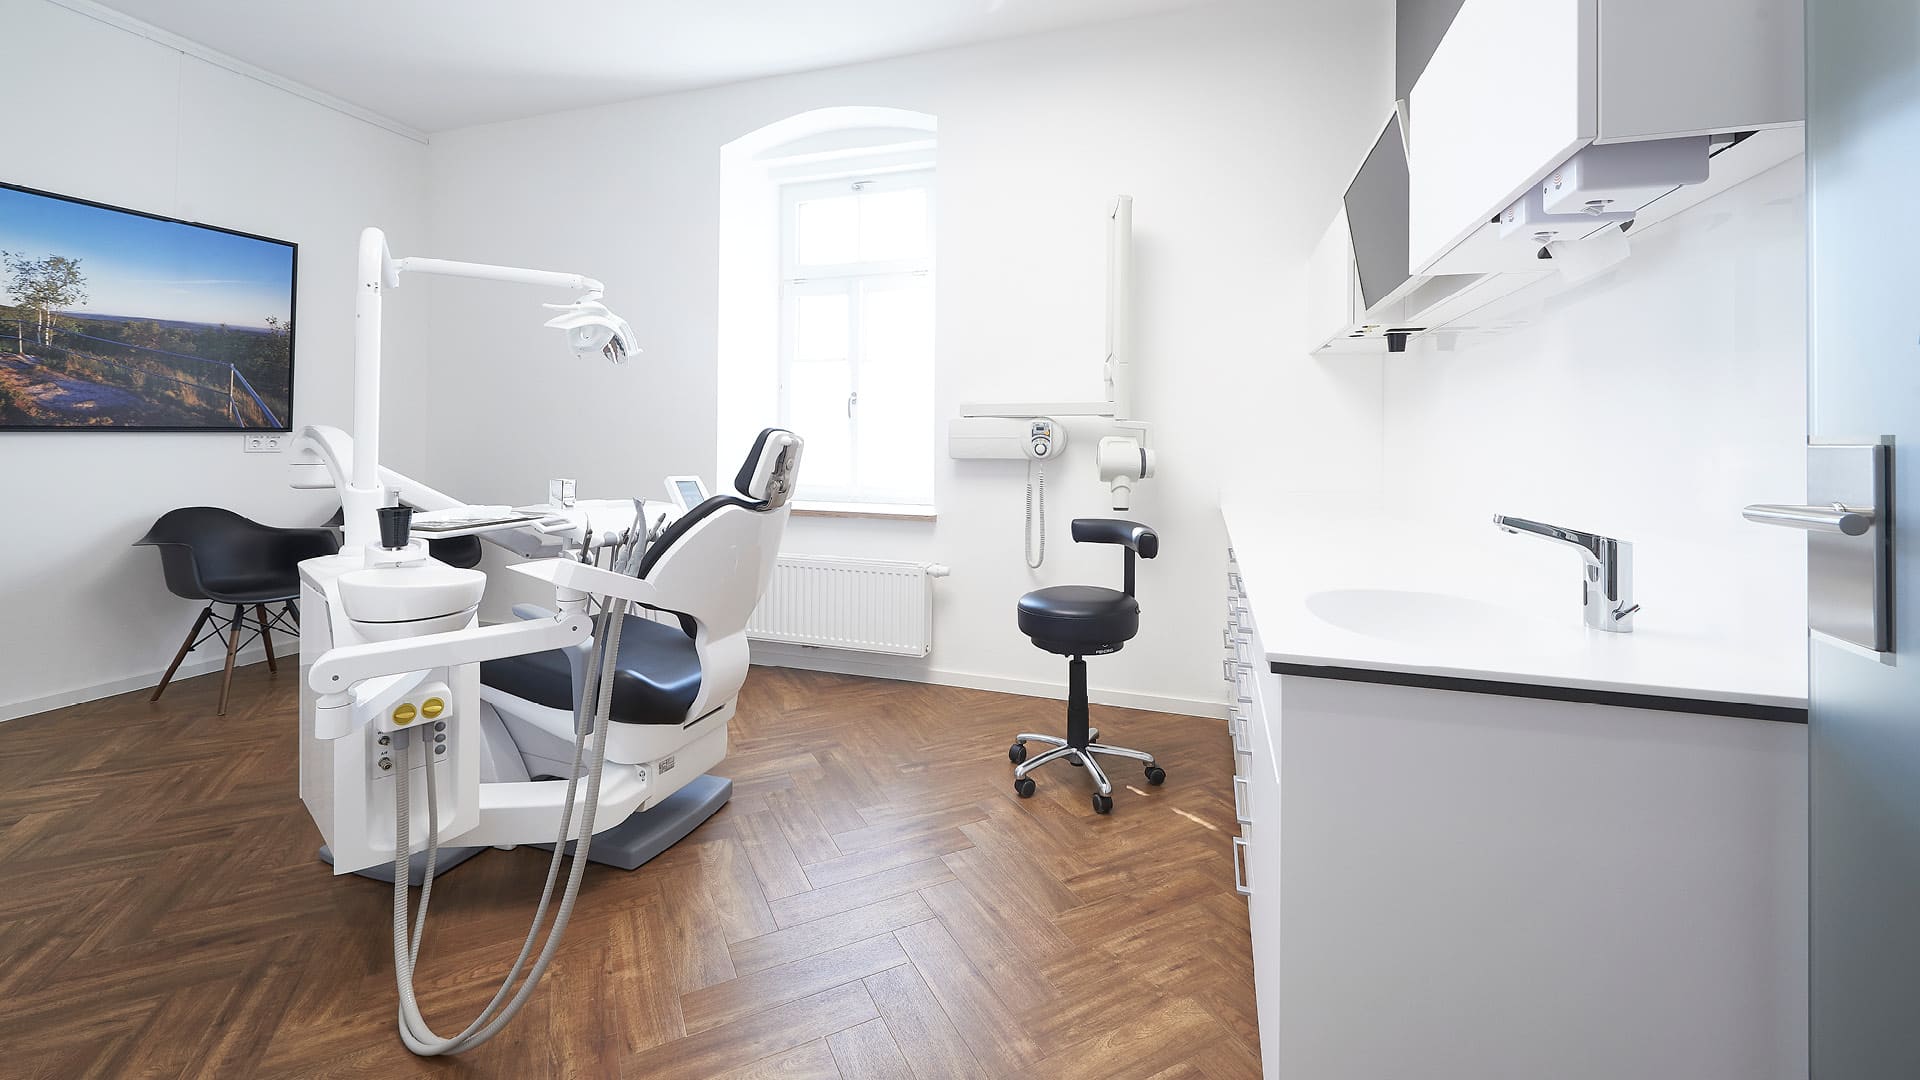 Neusorg Praxis Zahnarzt Behandlungsraum